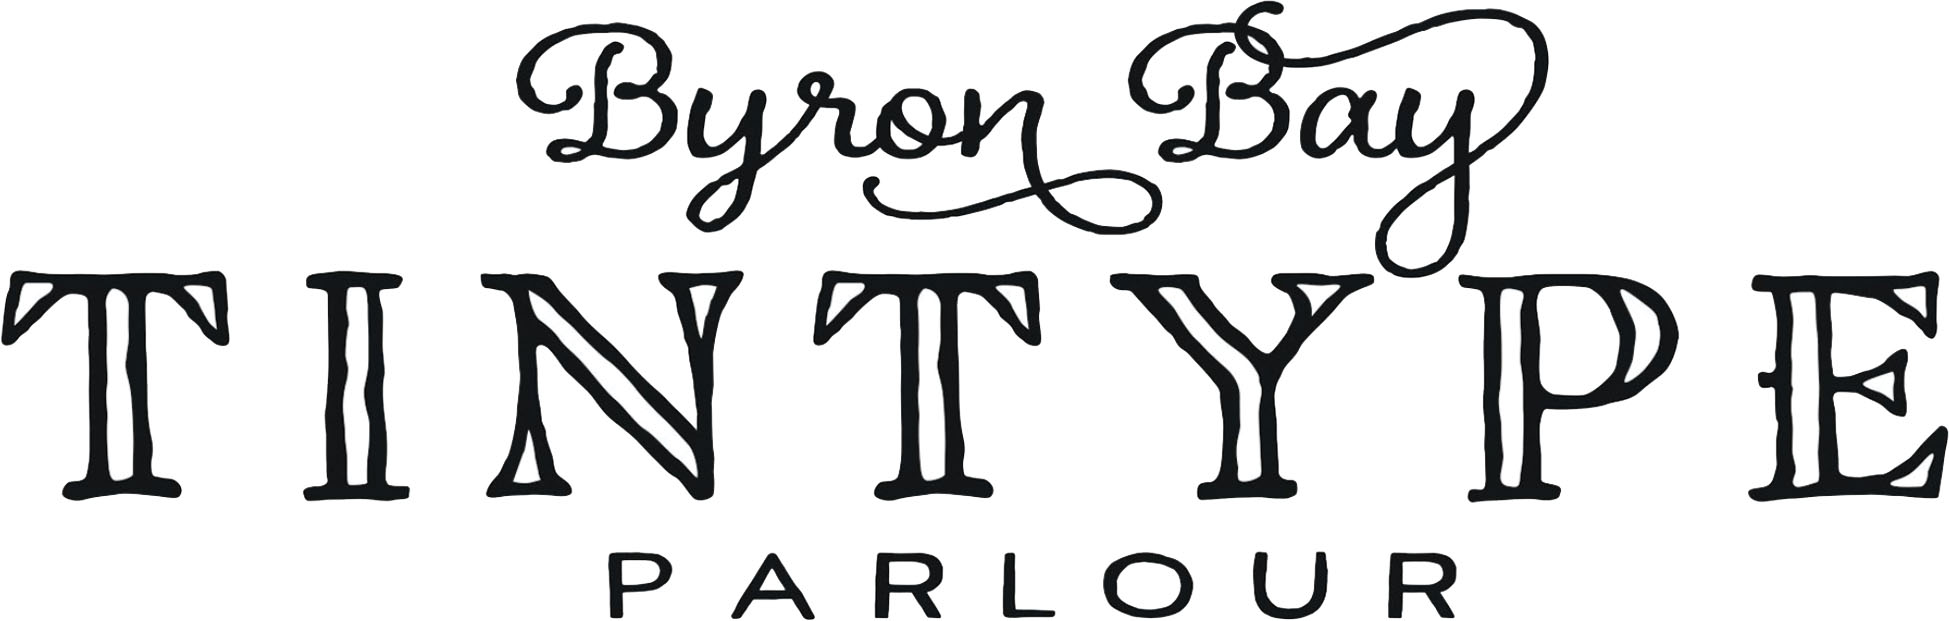 Artgalleries_NorthernRivers_ByronBayTintype-logo